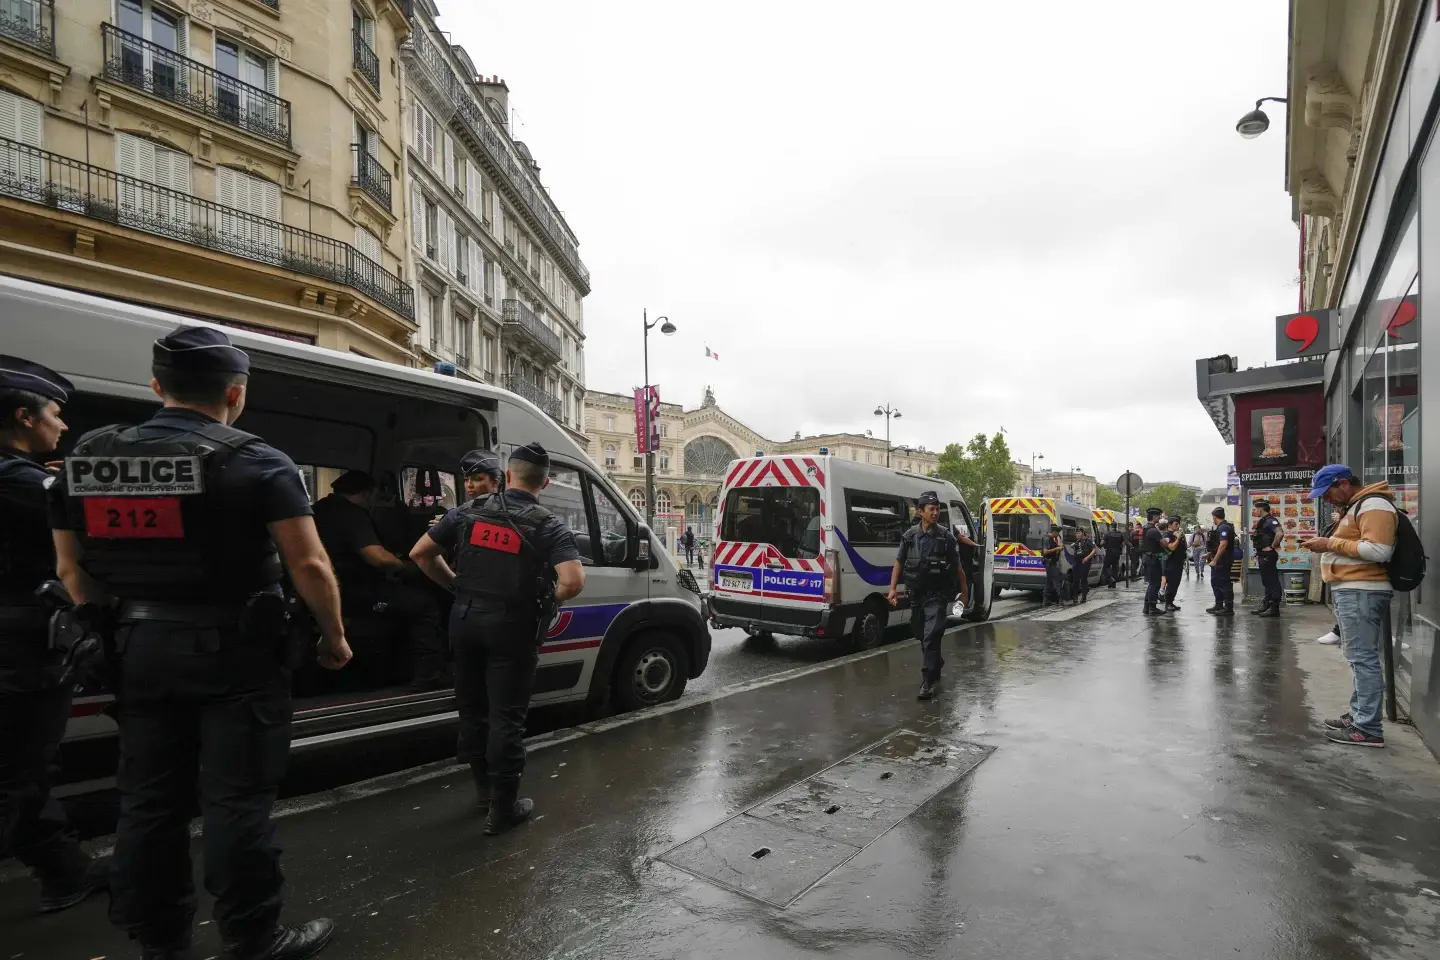 Los trenes saboteados y las lluvias previstas hacen que los Juegos Olímpicos de París tengan un comienzo más complicado de lo esperado